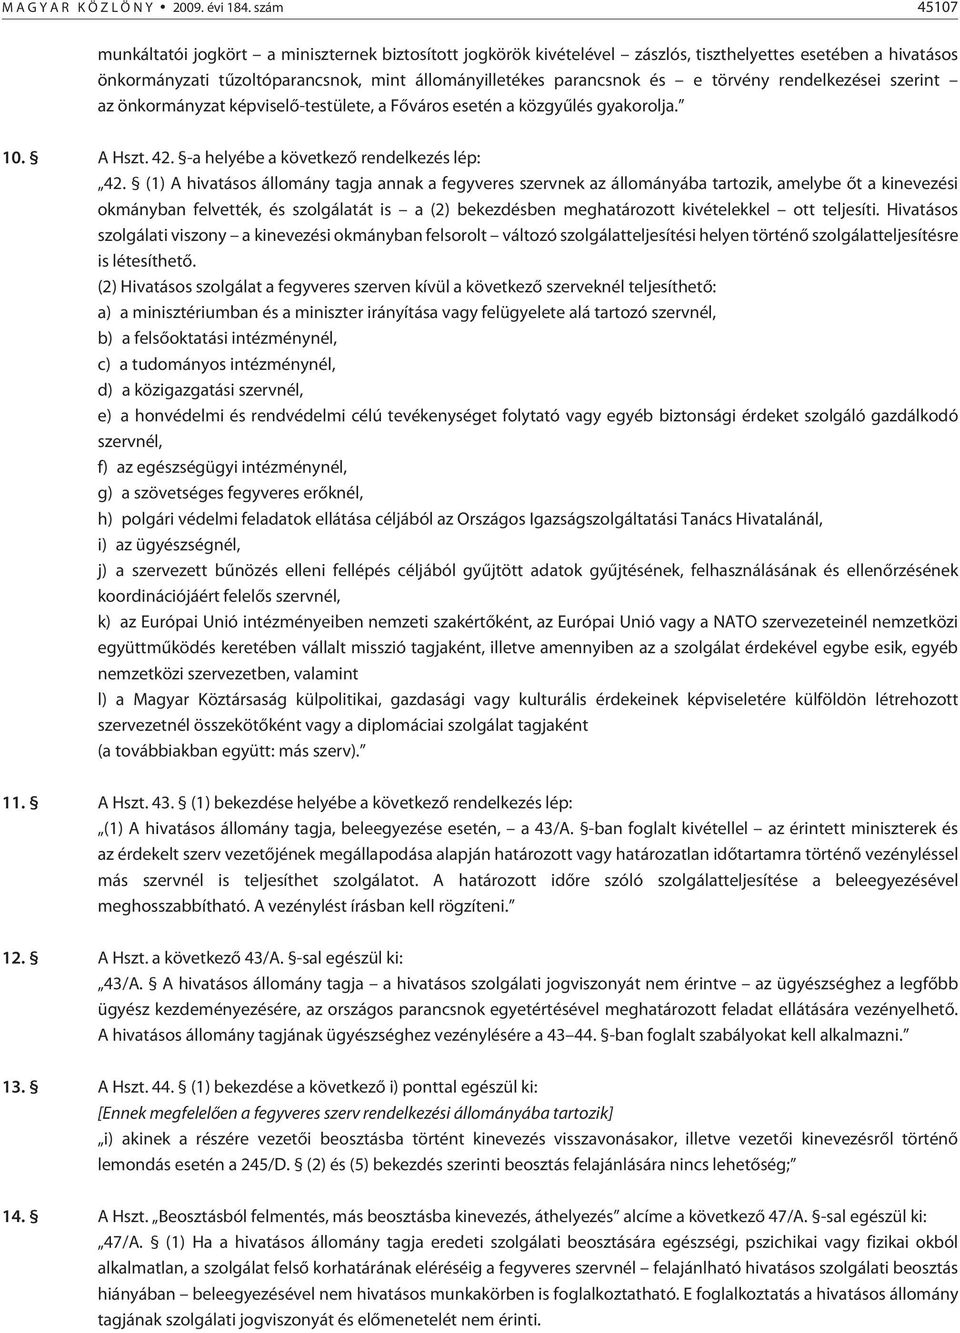 törvény rendelkezései szerint az önkormányzat képviselõ-testülete, a Fõváros esetén a közgyûlés gyakorolja. 10. A Hszt. 42. -a helyébe a következõ rendelkezés lép: 42.